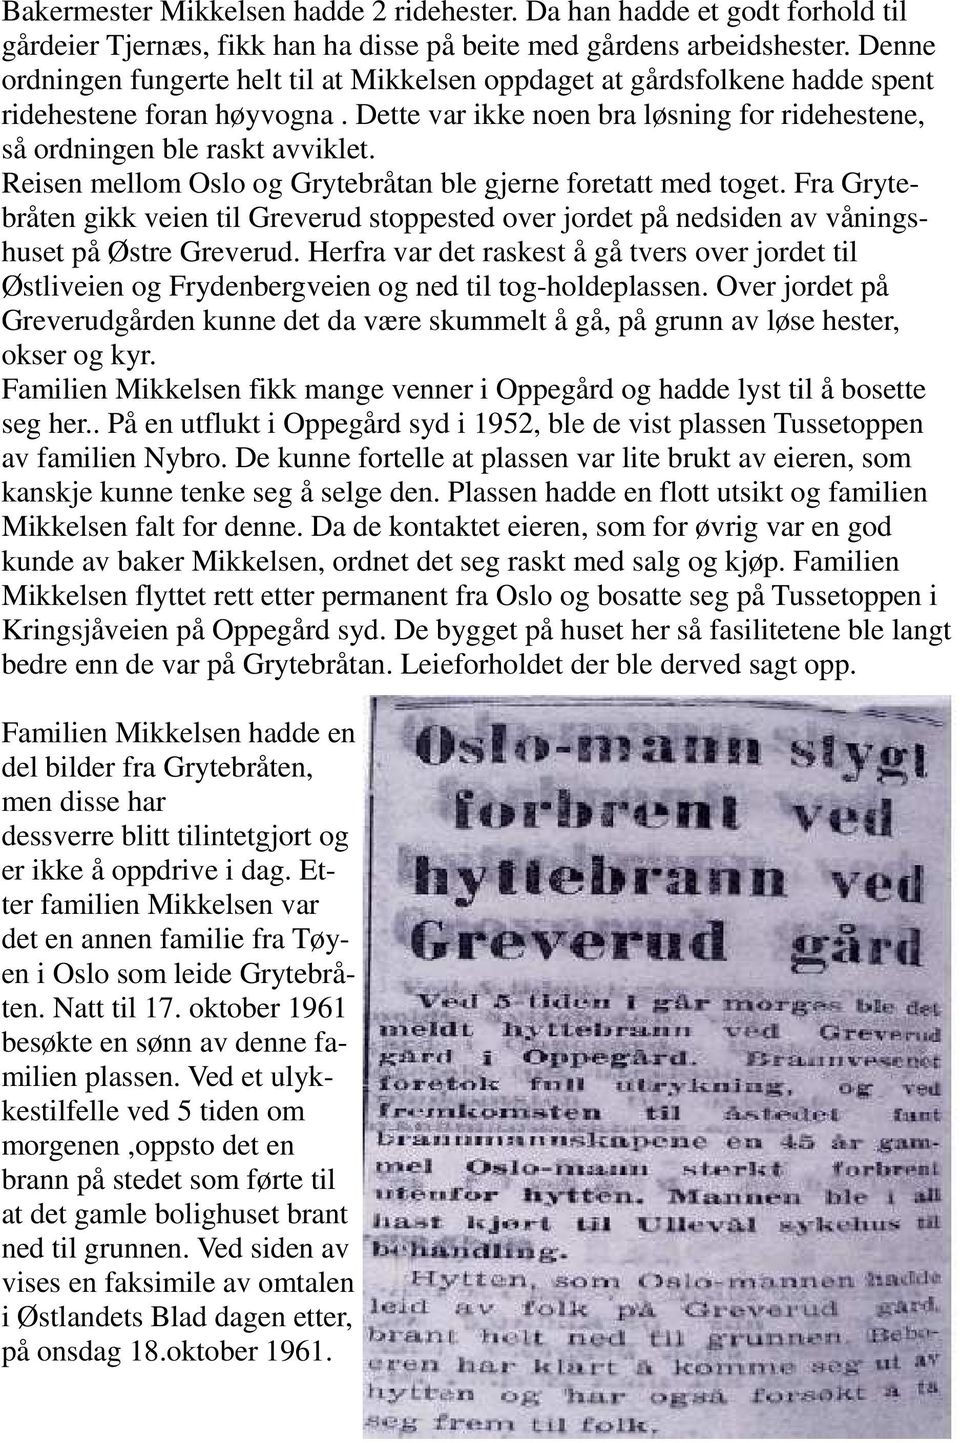 Reisen mellom Oslo og Grytebråtan ble gjerne foretatt med toget. Fra Grytebråten gikk veien til Greverud stoppested over jordet på nedsiden av våningshuset på Østre Greverud.